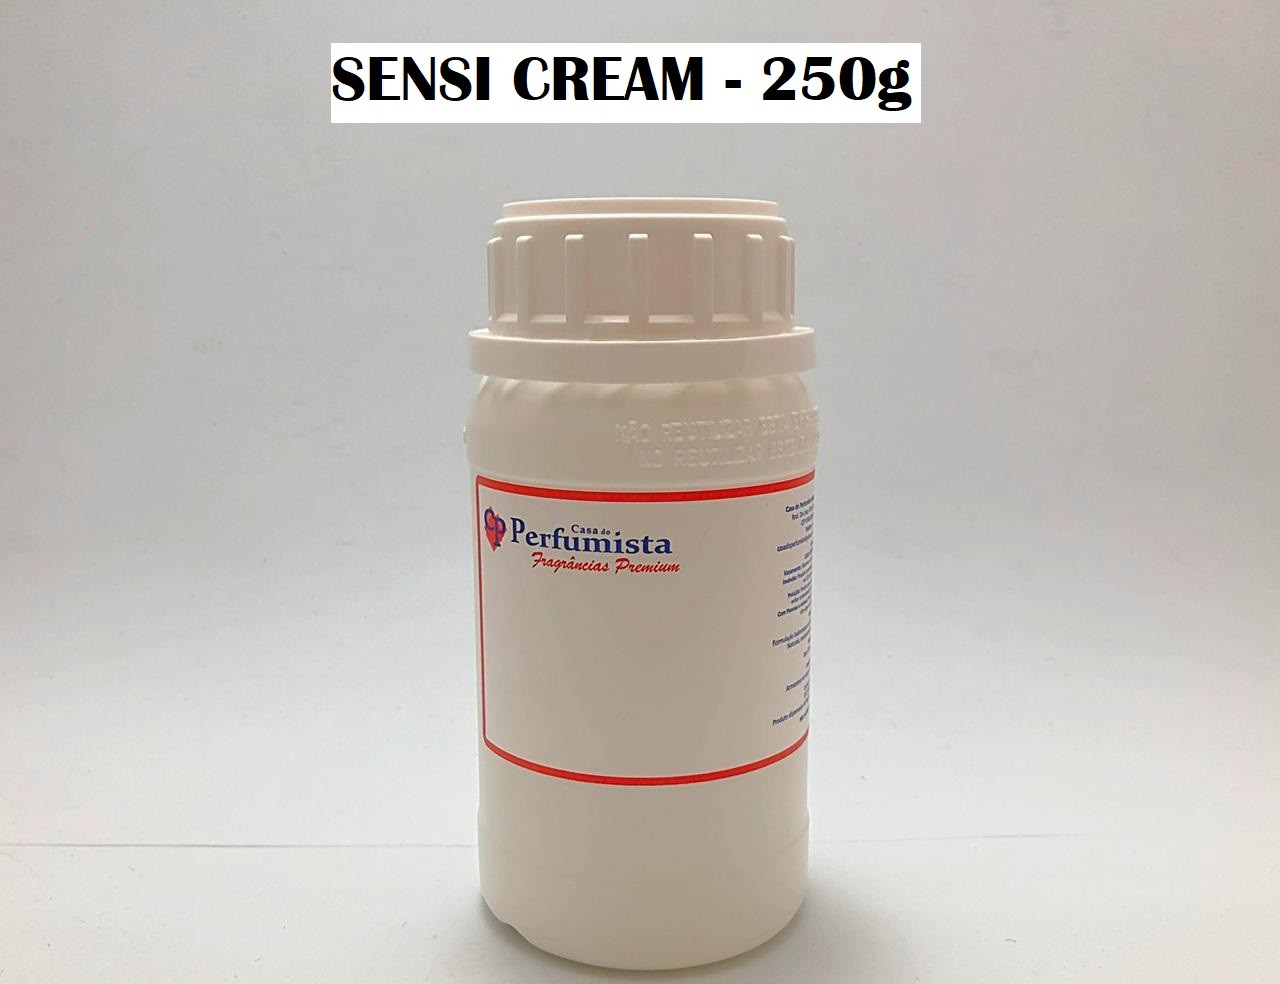 SENSI CREAM - 250g